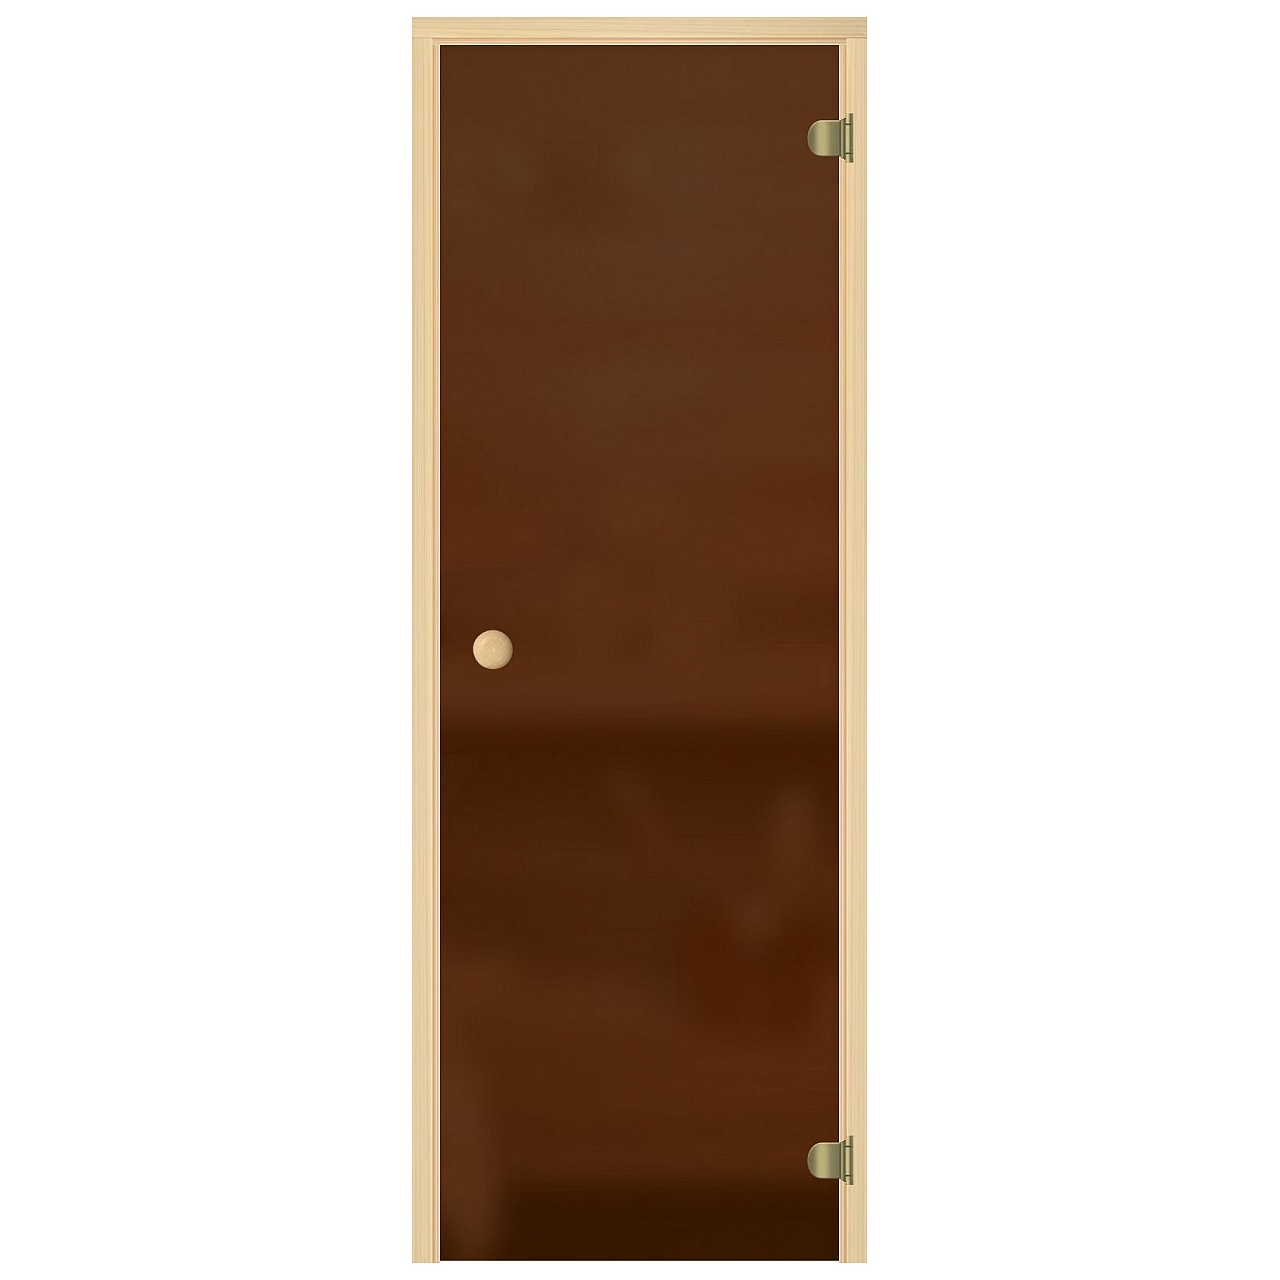 Дверь для саун "ЭКОНОМ" бронзовая с матированием, сосна, 6 мм 690*1890 превью слайда 1